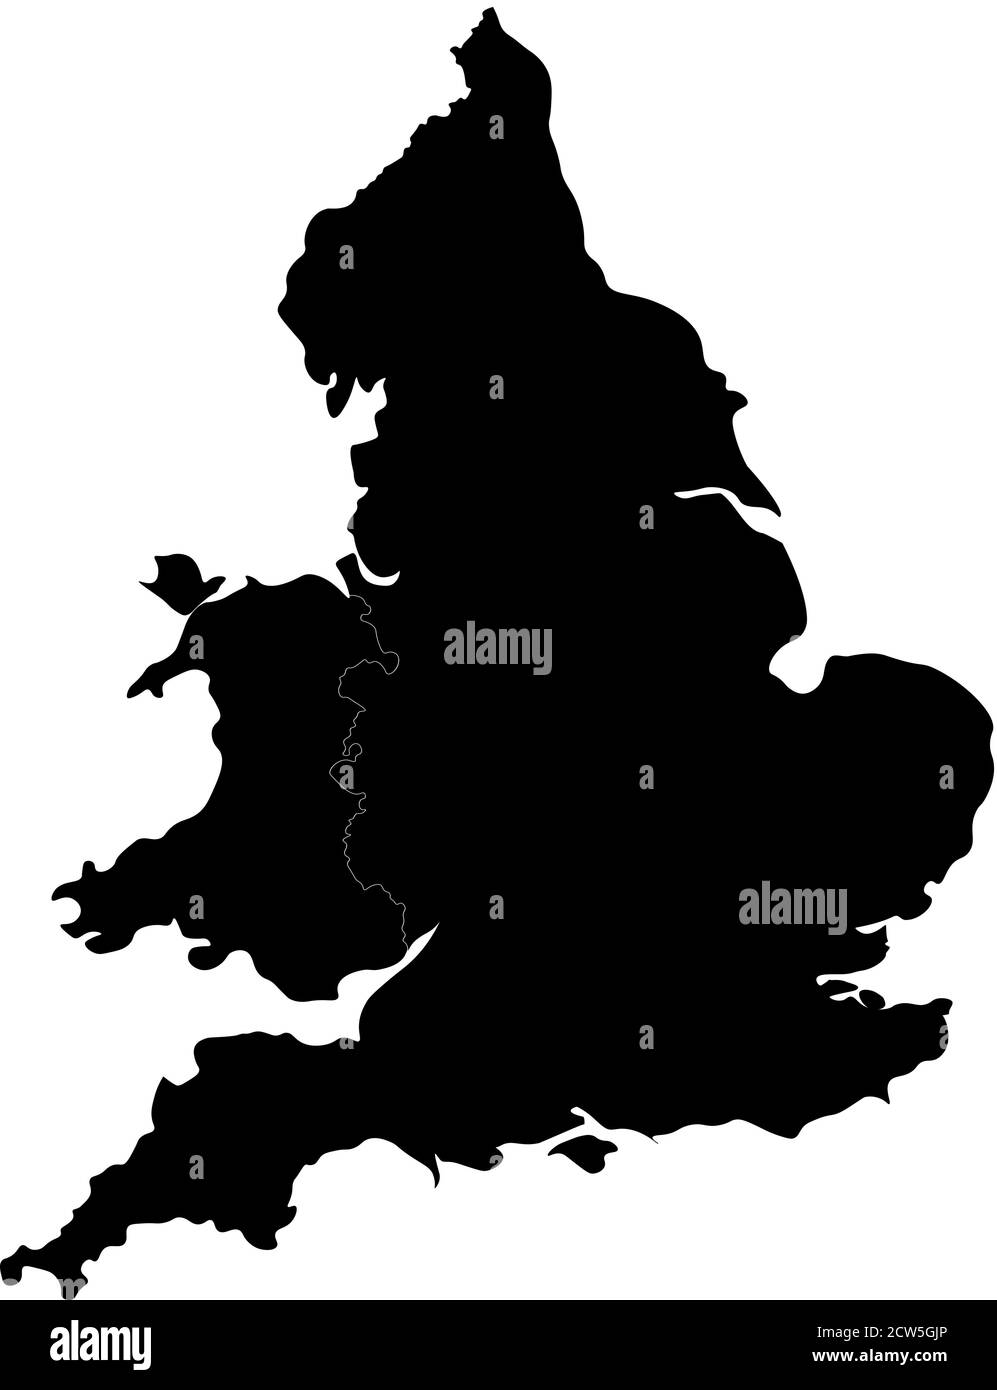 England und Wales Silhouette. Formschöne Karte mit abgerundeten Kanten für einen eleganten Look. Vektorgrafik. Stock Vektor